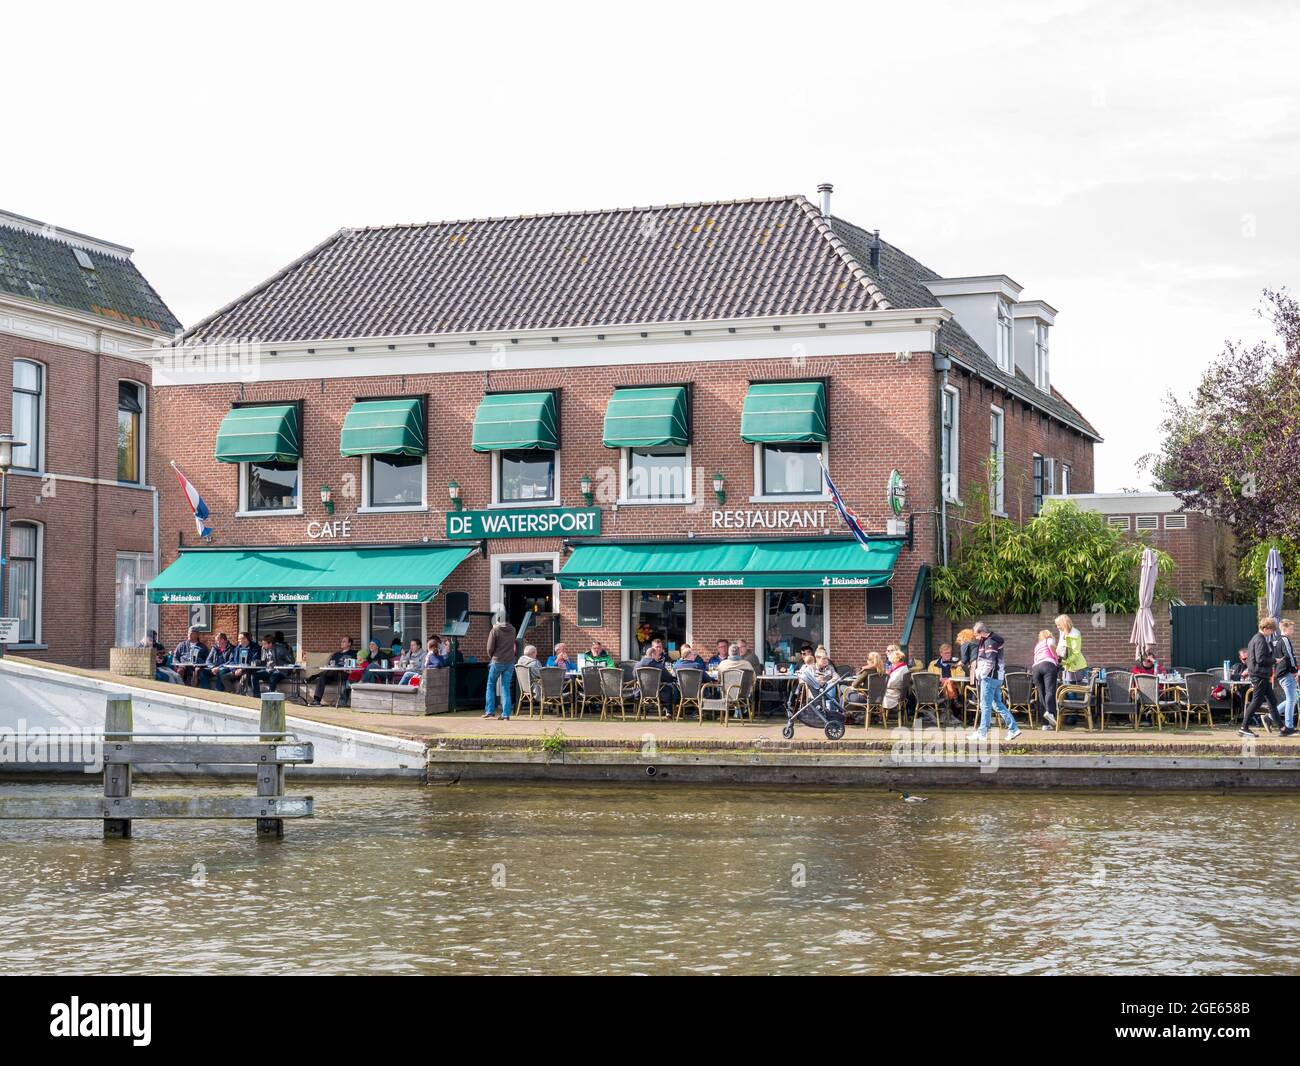 Le persone che godono di una terrazza all'aperto sul marciapiede del ristorante caffetteria del canale EE a Woudsend, Friesland Foto Stock